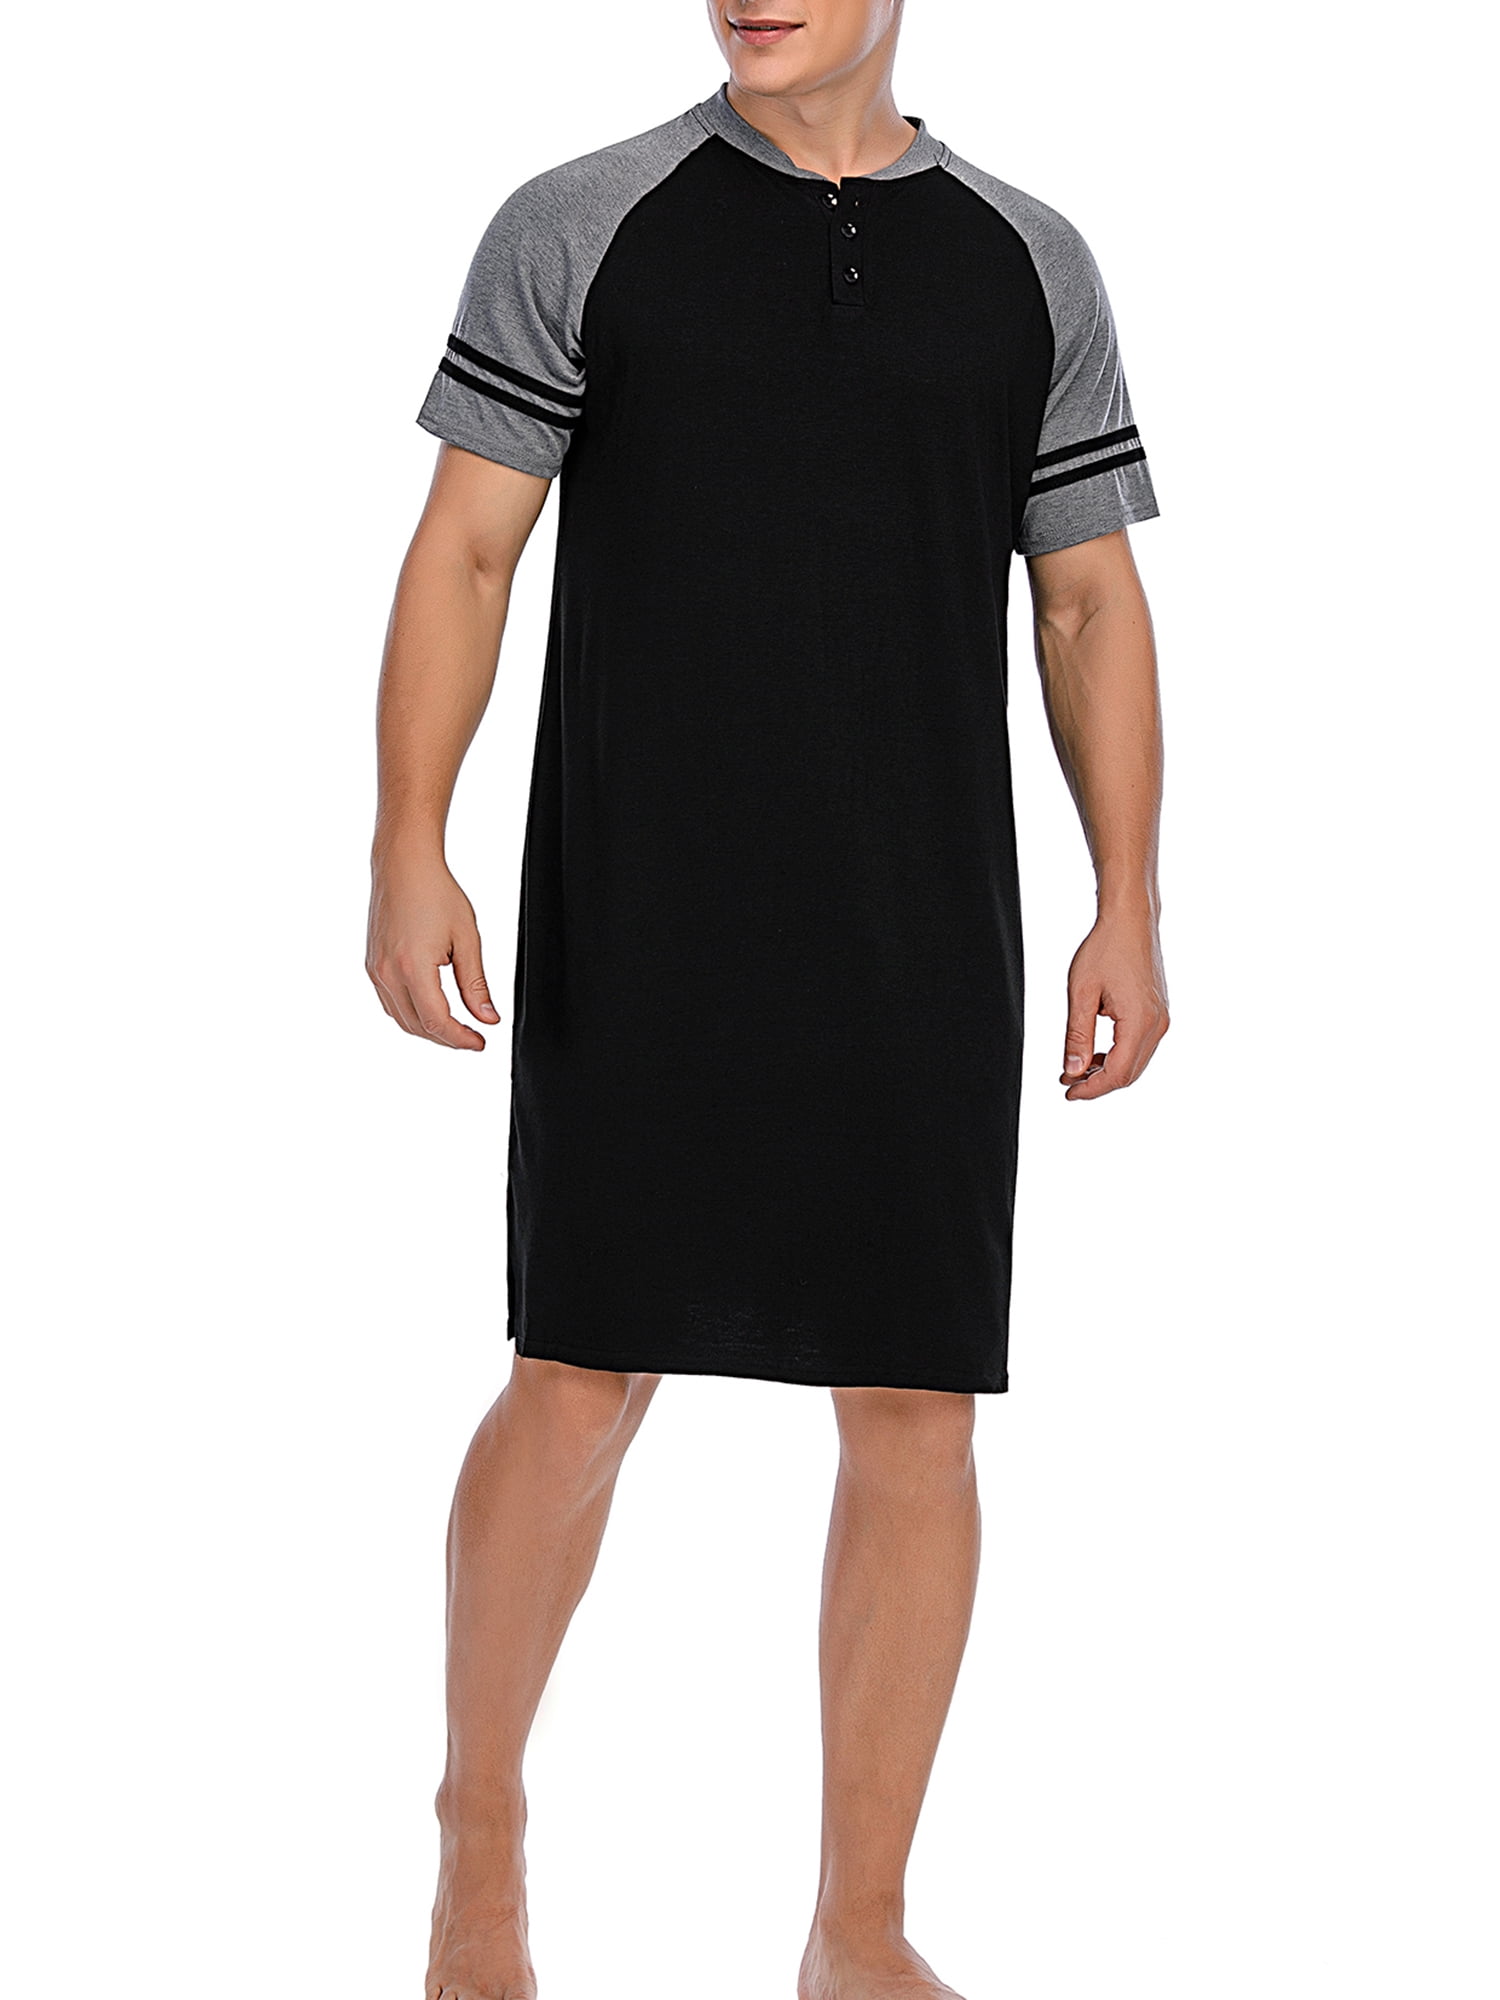 Ekouaer Sleepwear Men's Nightshirt Short Sleeve Pajamas Comfy Big & Tall Henley Sleep Shirt M-XXXL 